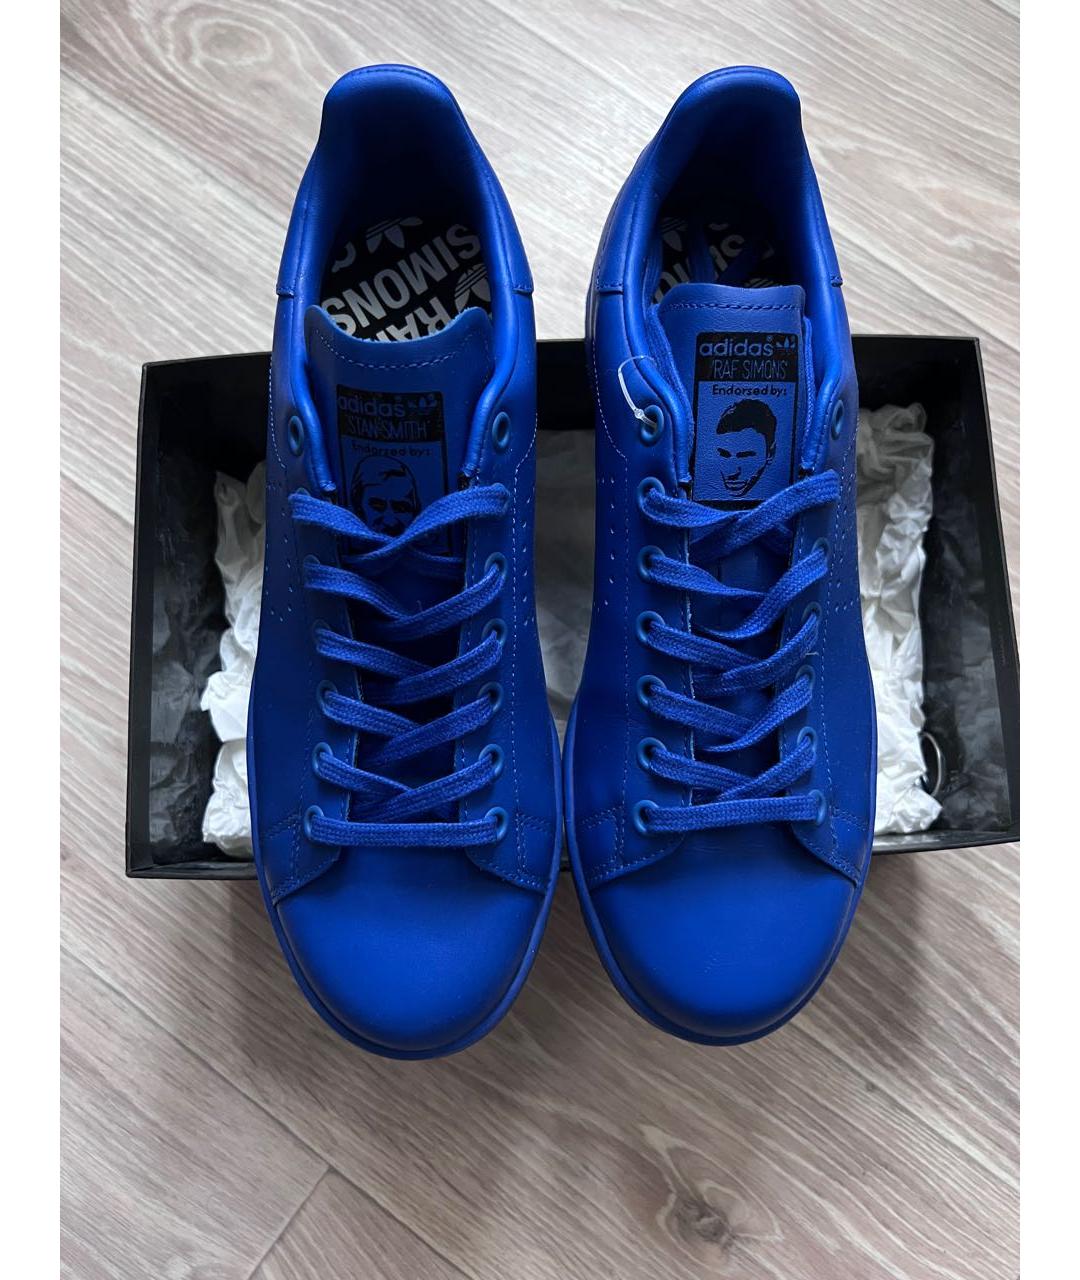 ADIDAS X RAF SIMONS Синие кожаные низкие кроссовки / кеды, фото 3